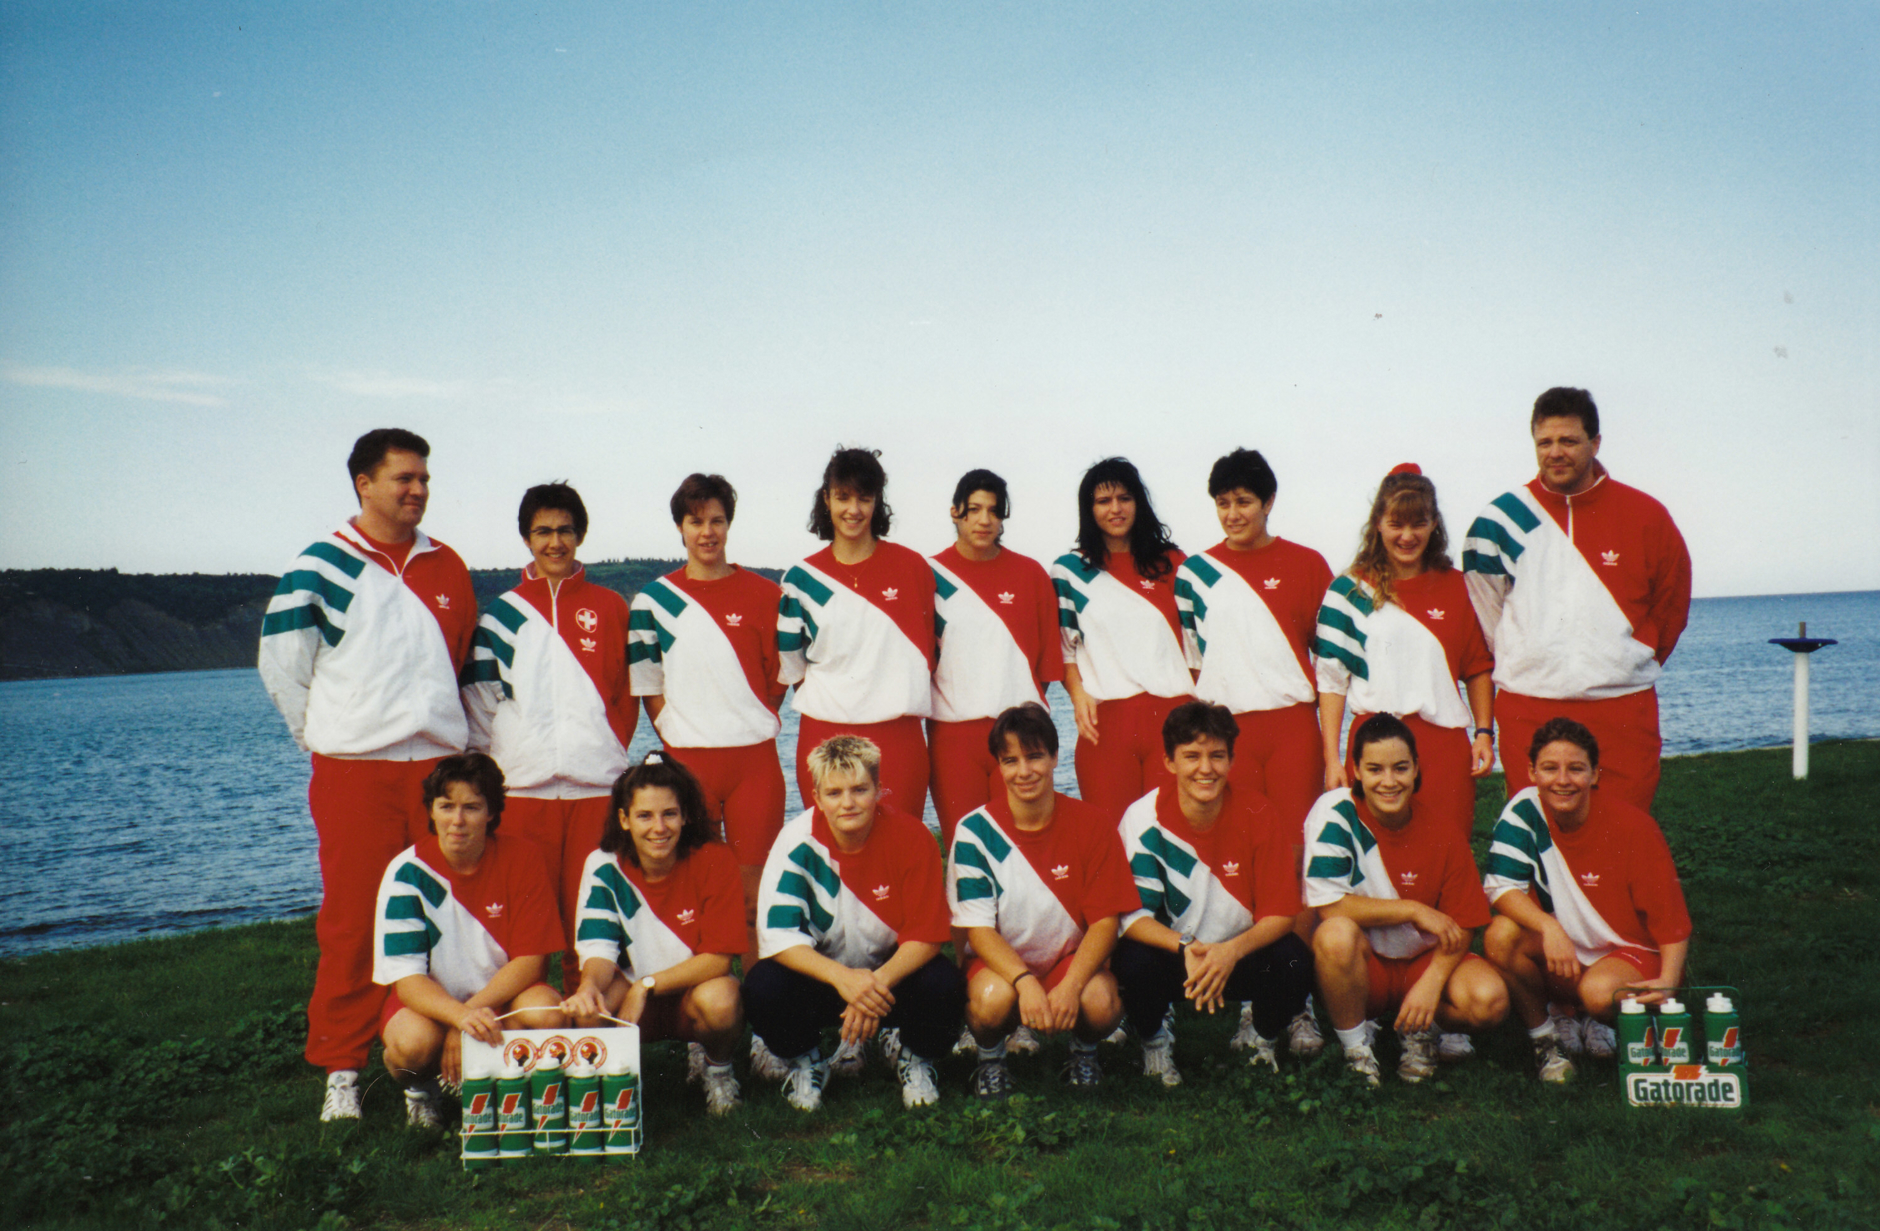 1995-09 Teamfoto Frauen Nati Trainingslager in Ljubljana2.jpg